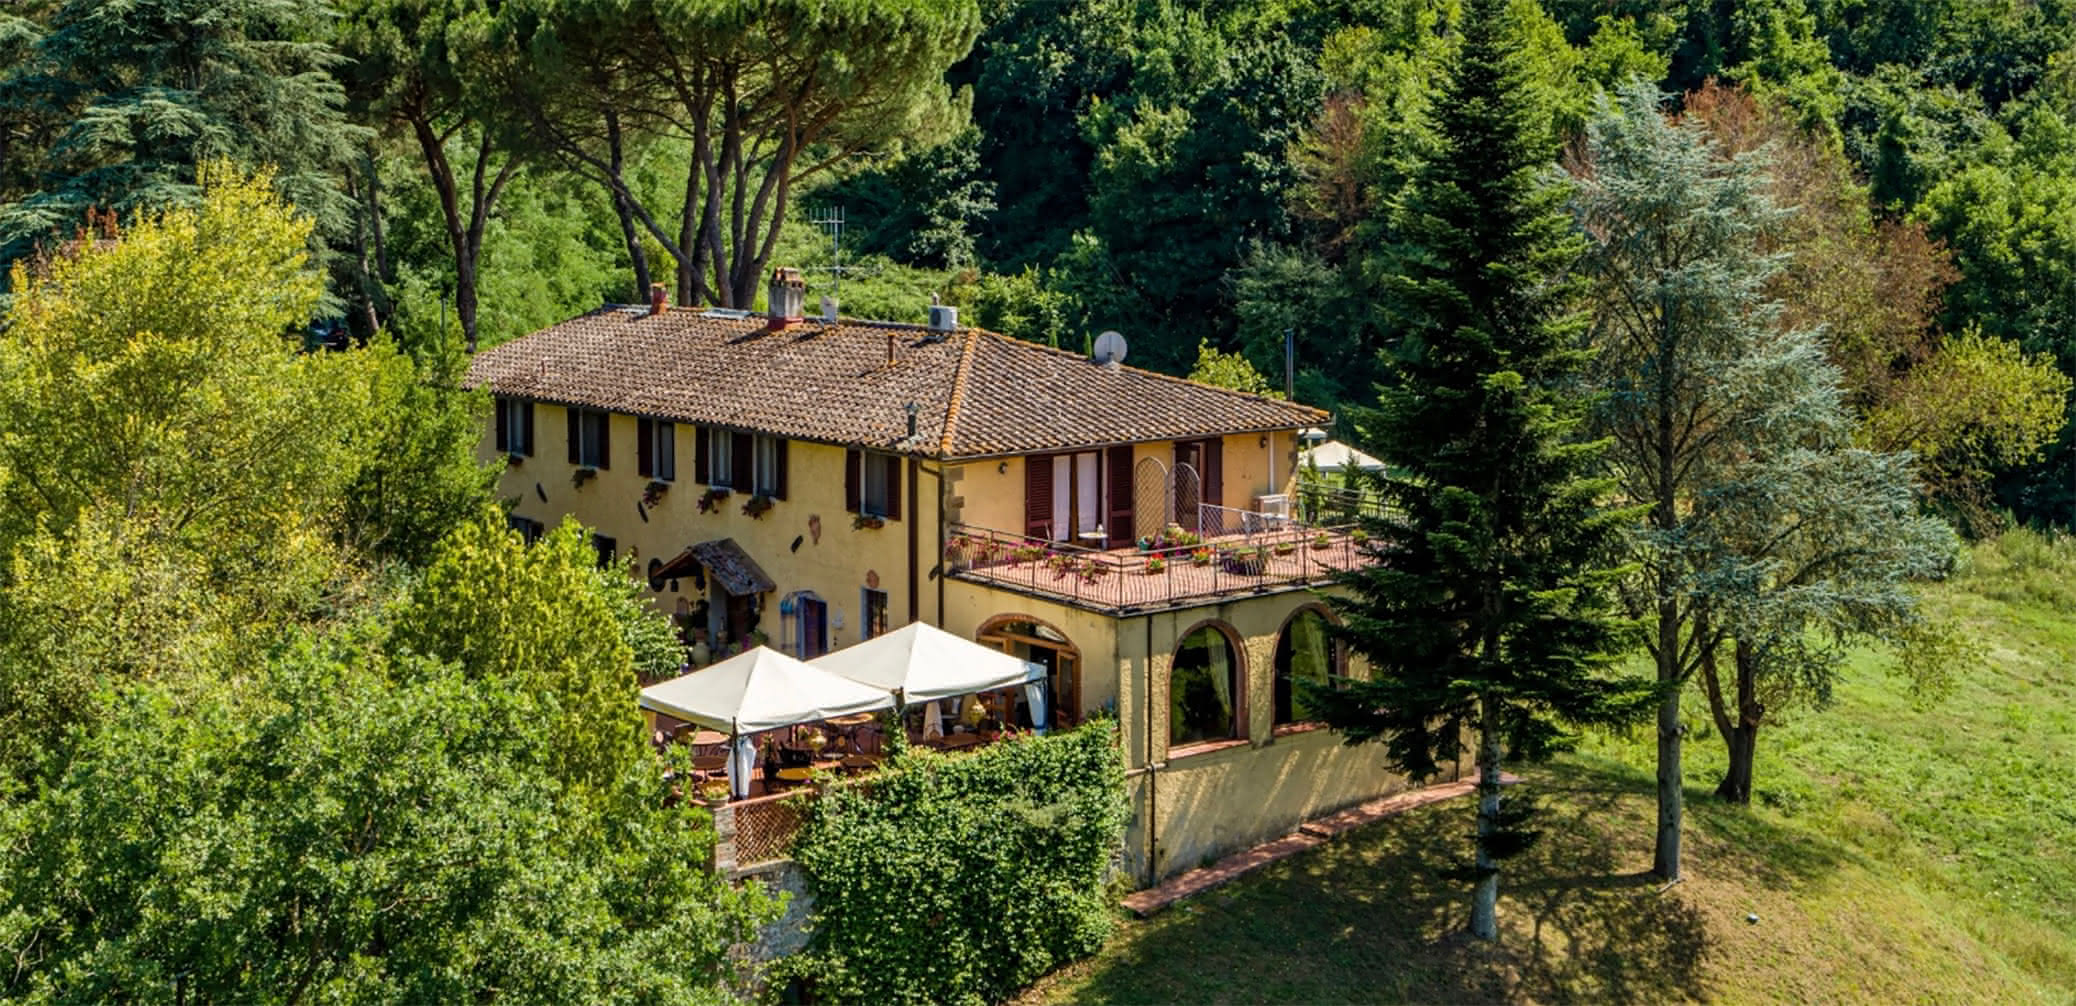 Review Of Villa Poggio di Gaville Near Florence